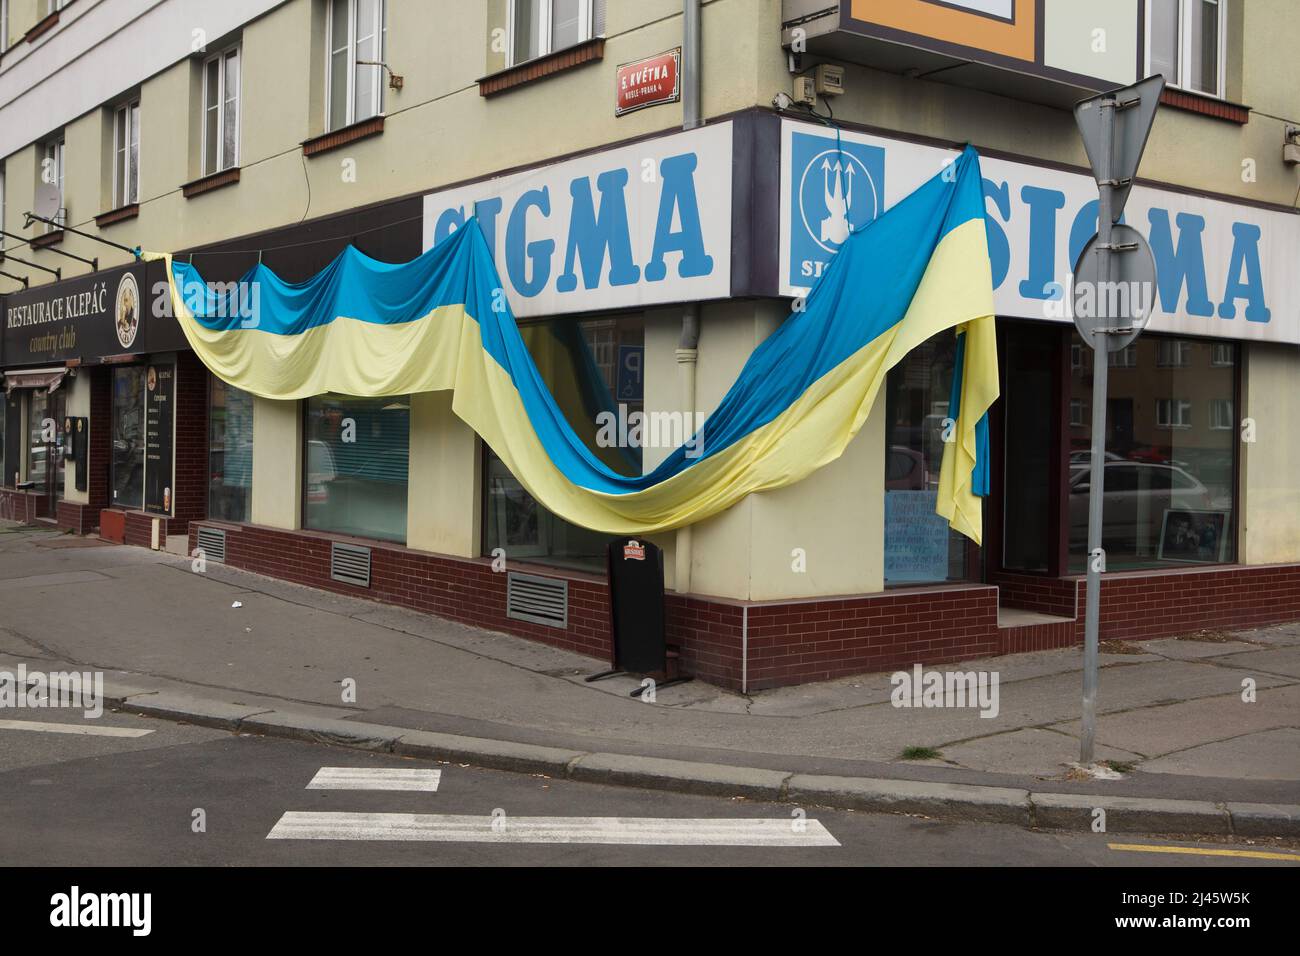 Bandiera nazionale Ucraina posta sul Sigma Store nel distretto di Pankrác a Praga, Repubblica Ceca, nella foto del 15 marzo 2022. L'enorme bandiera fu appesa per sostenere i rifugiati ucraini nella Repubblica Ceca e per protestare contro l'invasione russa dell'Ucraina nel 2022. Foto Stock